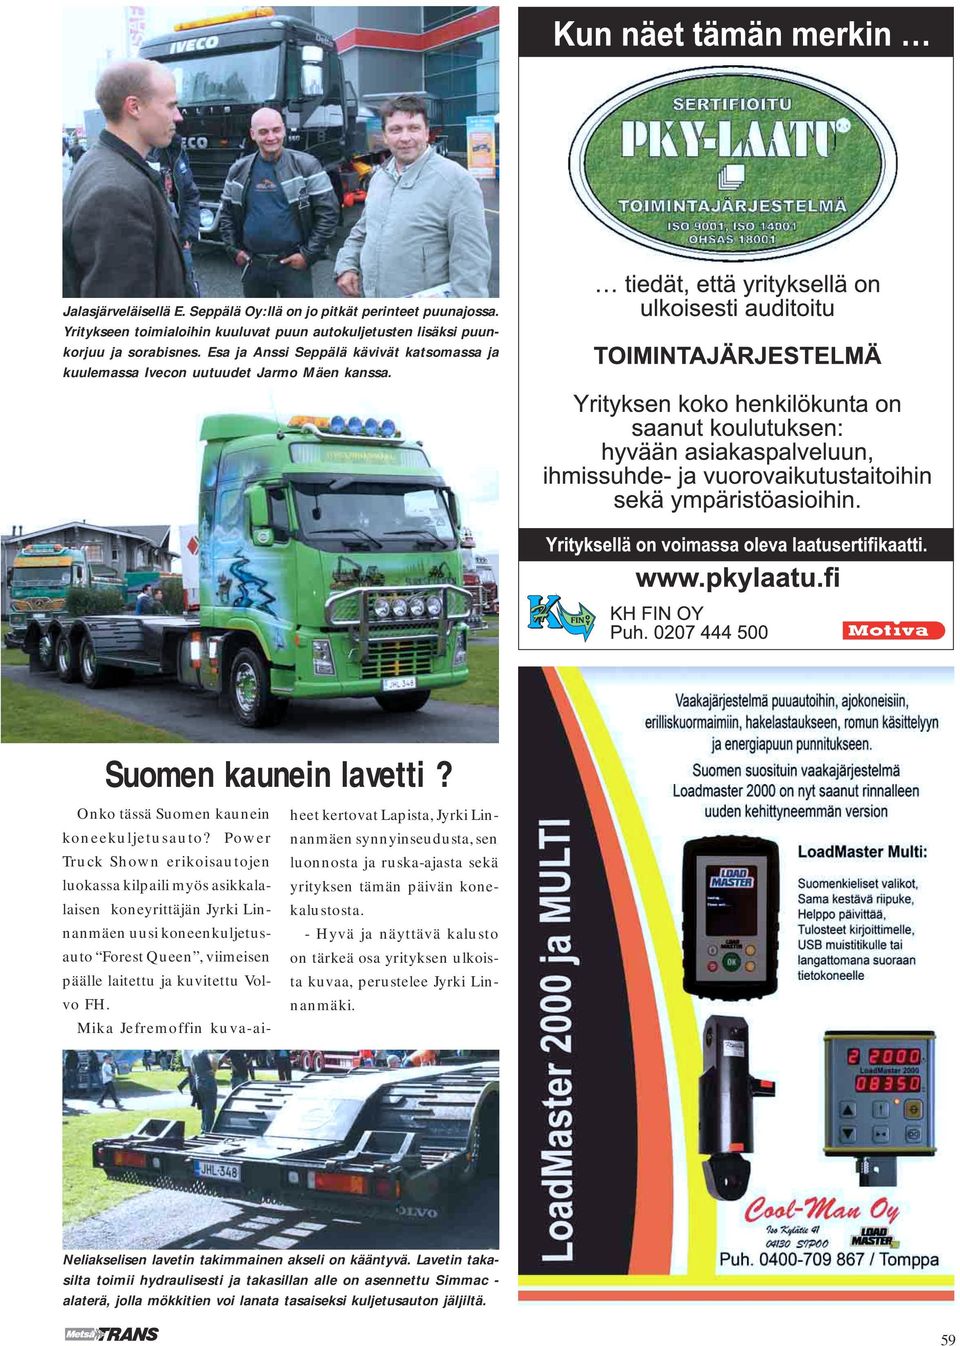 Power Truck Shown erikoisautojen luokassa kilpaili myös asikkalalaisen koneyrittäjän Jyrki Linnanmäen uusi koneenkuljetusauto Forest Queen, viimeisen päälle laitettu ja kuvitettu Volvo FH.